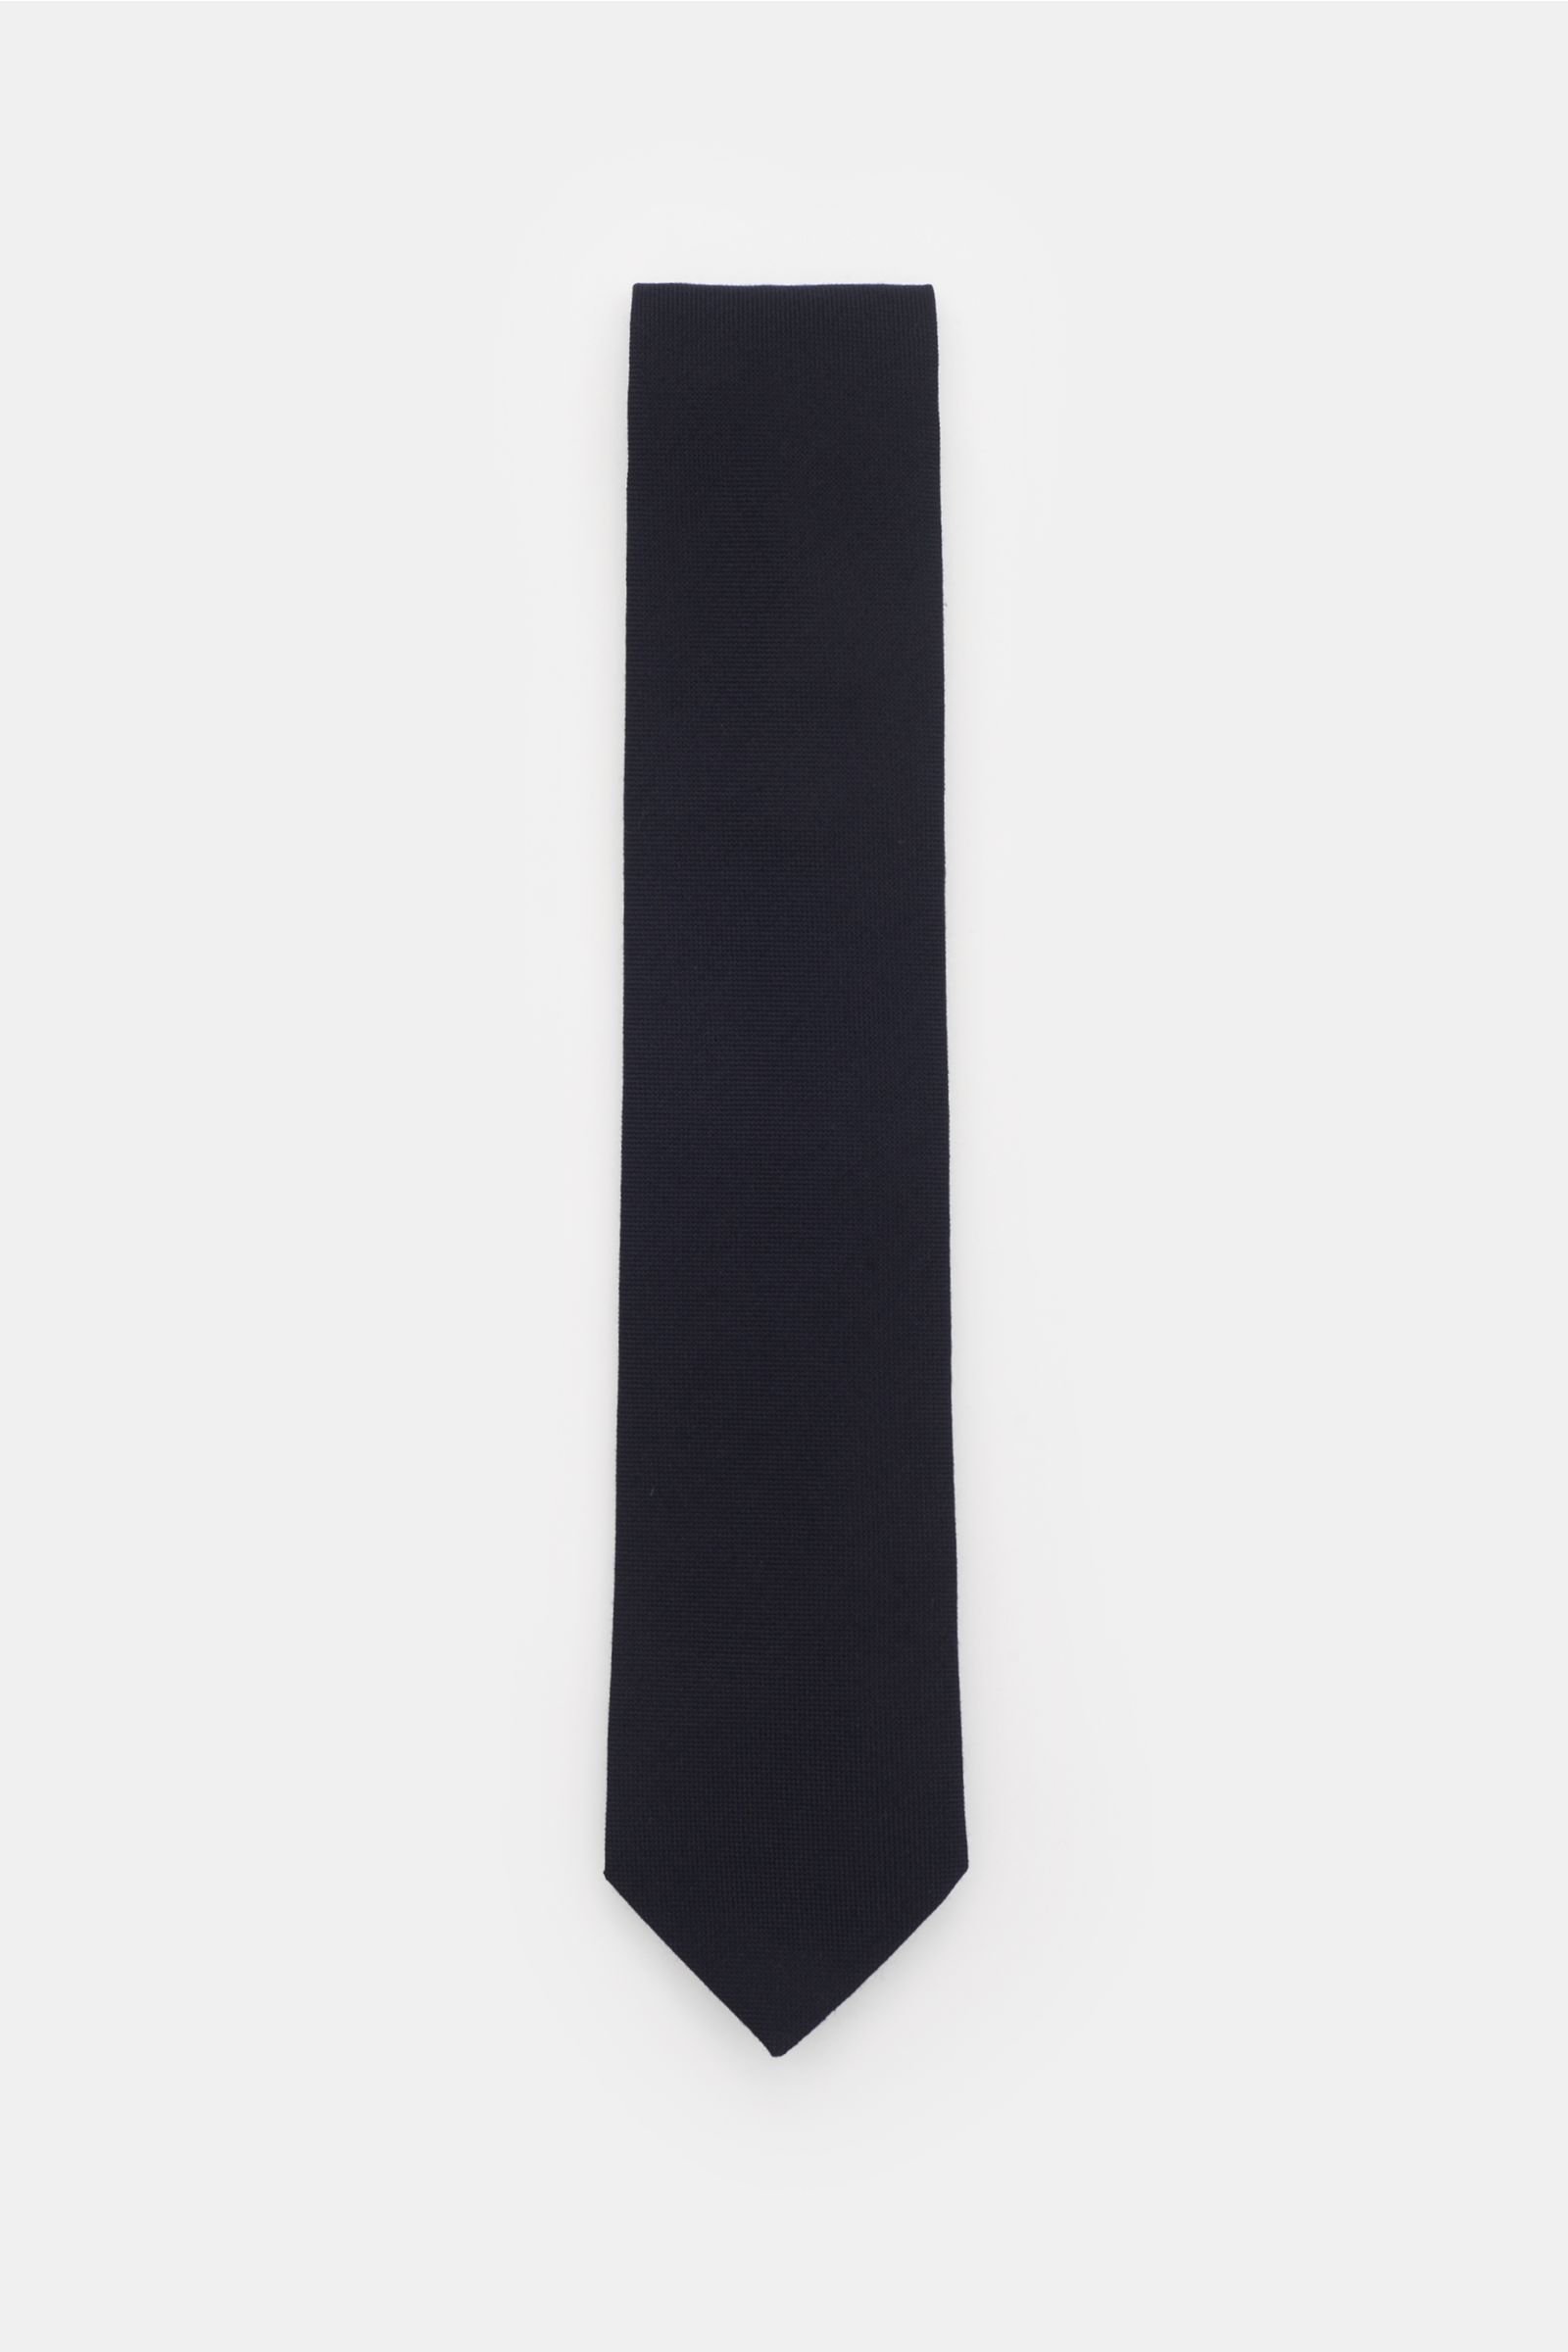 Krawatte dark navy